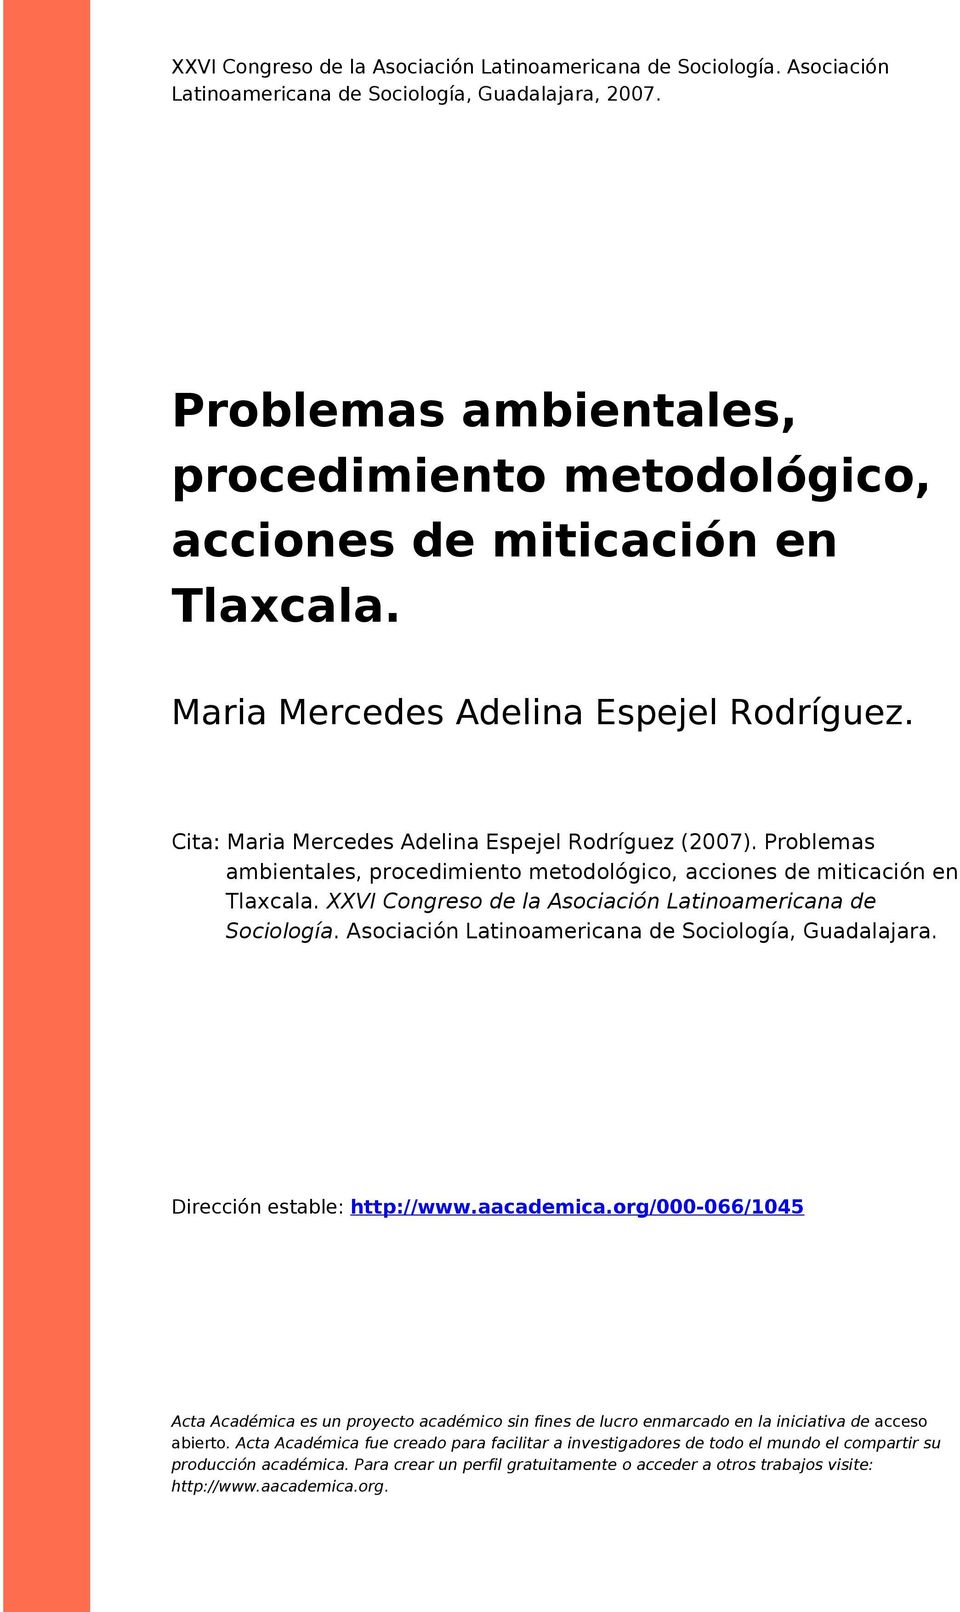 Problemas ambientales, procedimiento metodológico, acciones de miticación en Tlaxcala. XXVI Congreso de la Asociación Latinoamericana de Sociología.